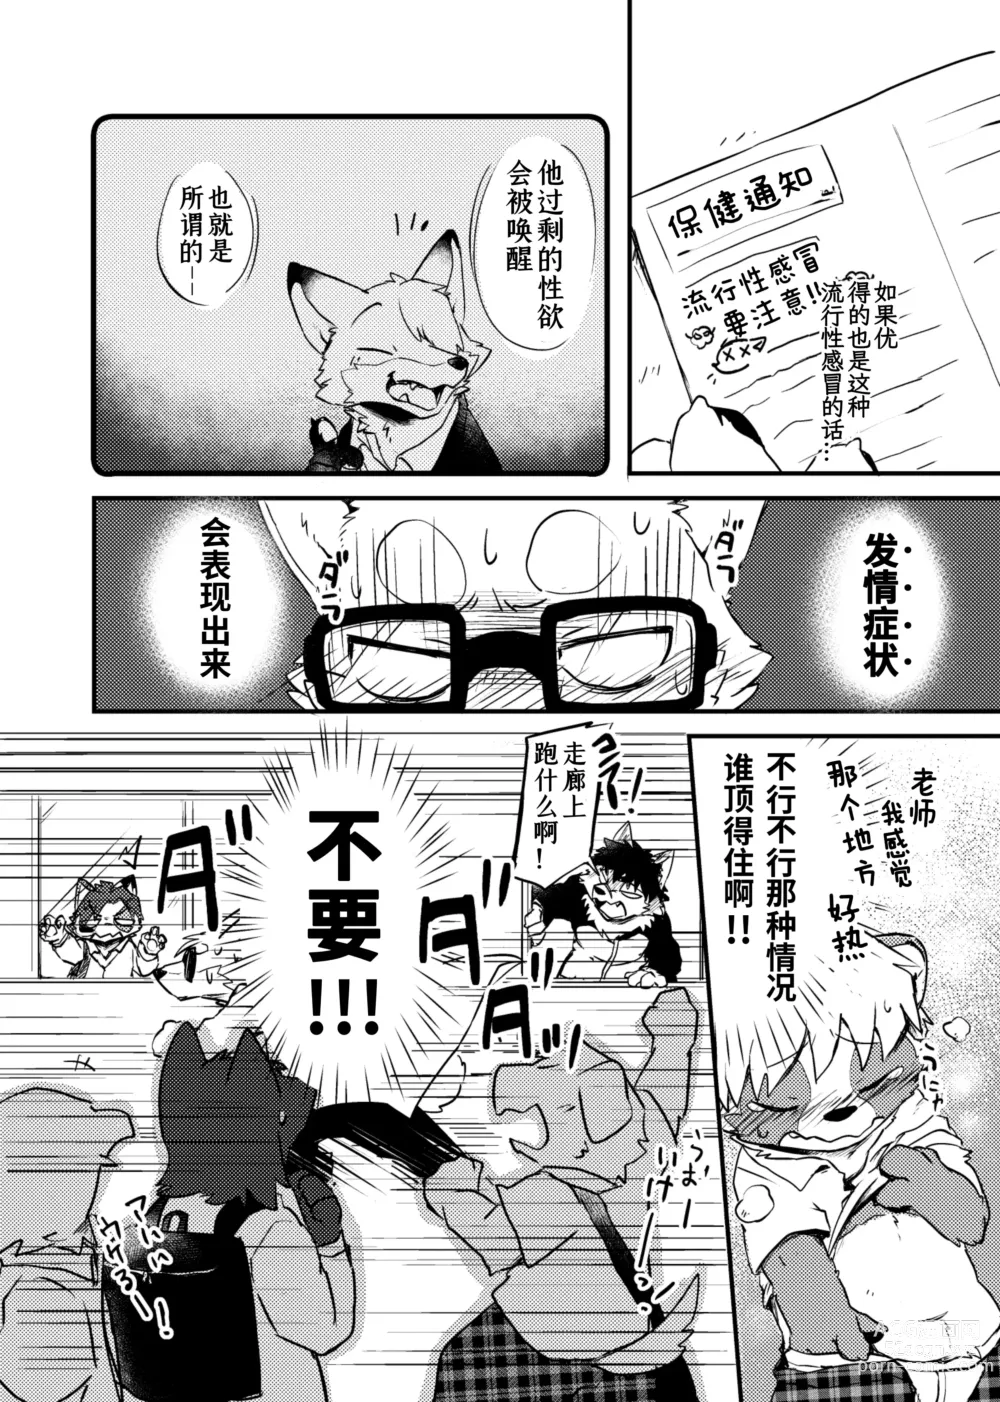 Page 12 of doujinshi 老师和我。流行性感冒务必要注意哦！？